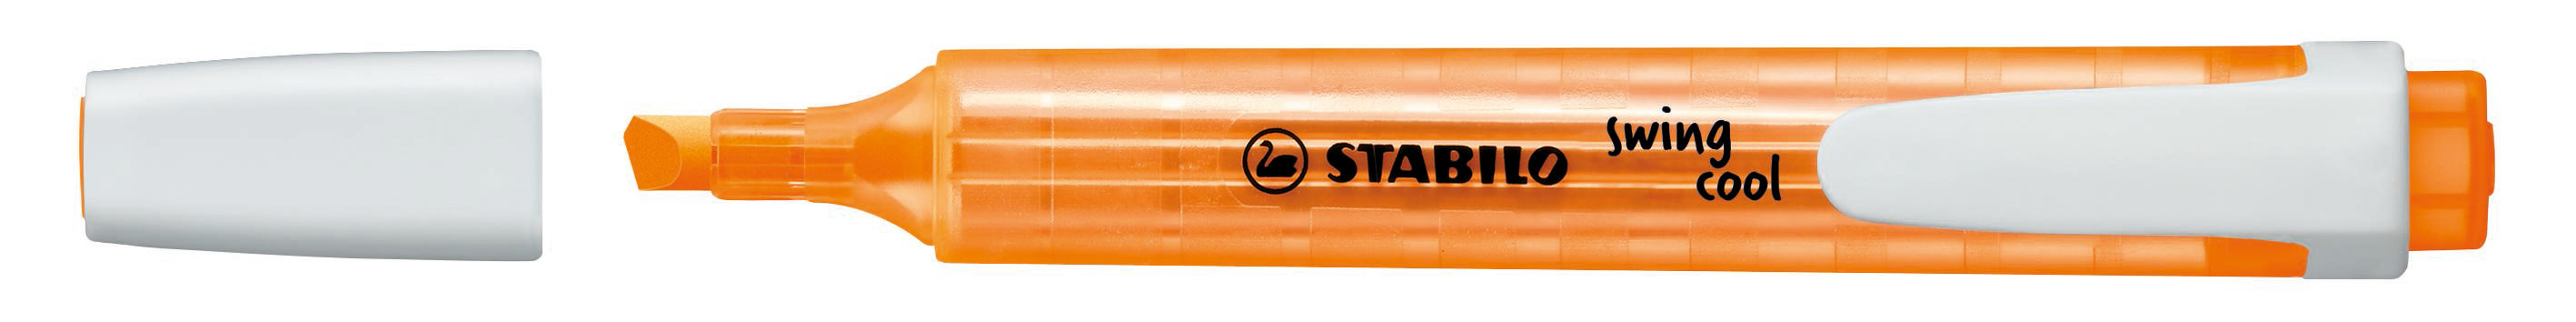 STABILO Surligneur Swing Cool 1-4mm 275-54 orange